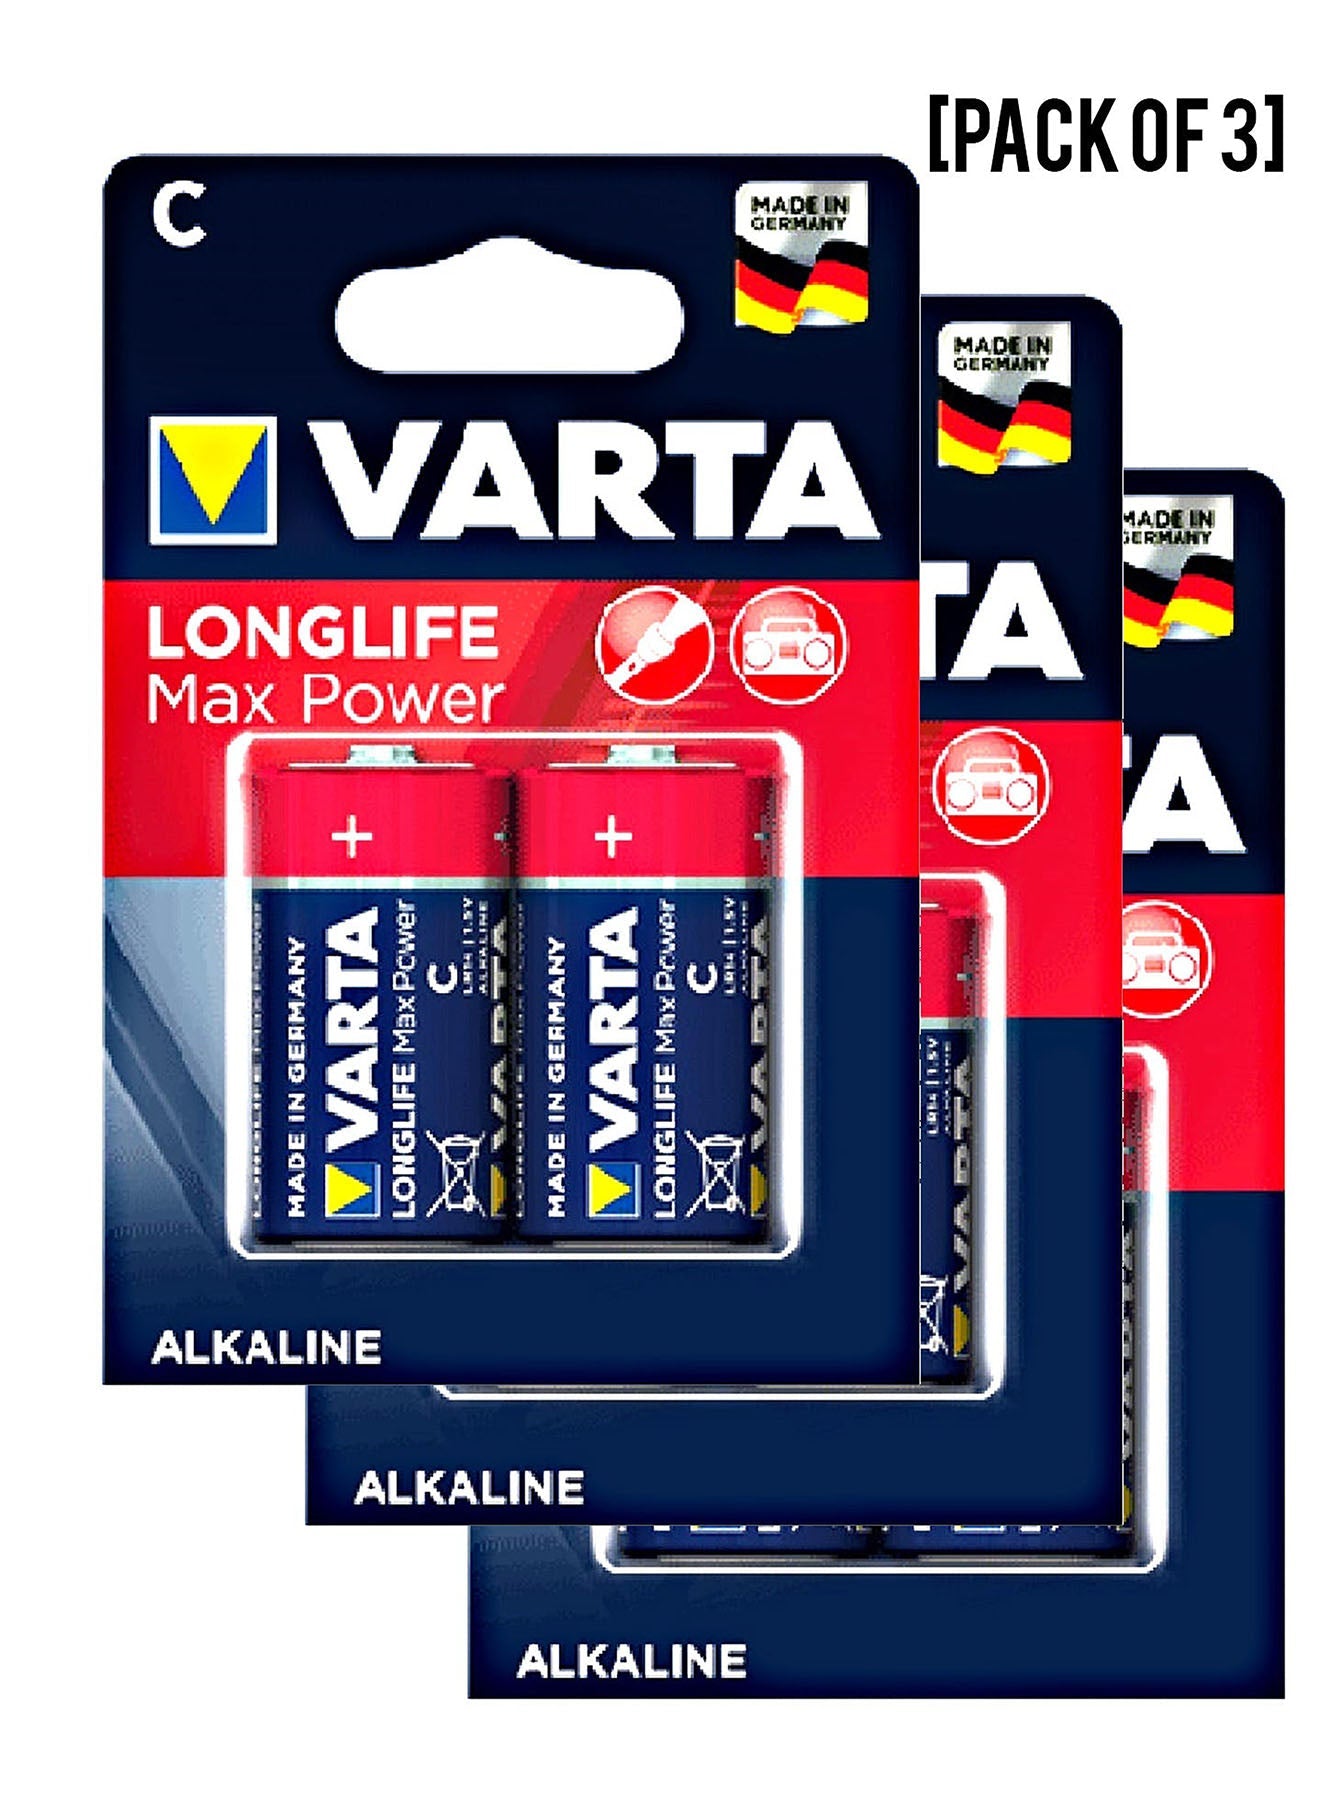 Varta Long Life MaxPower LR14 C Alkaline Battery 2Units Value Pack of 3 